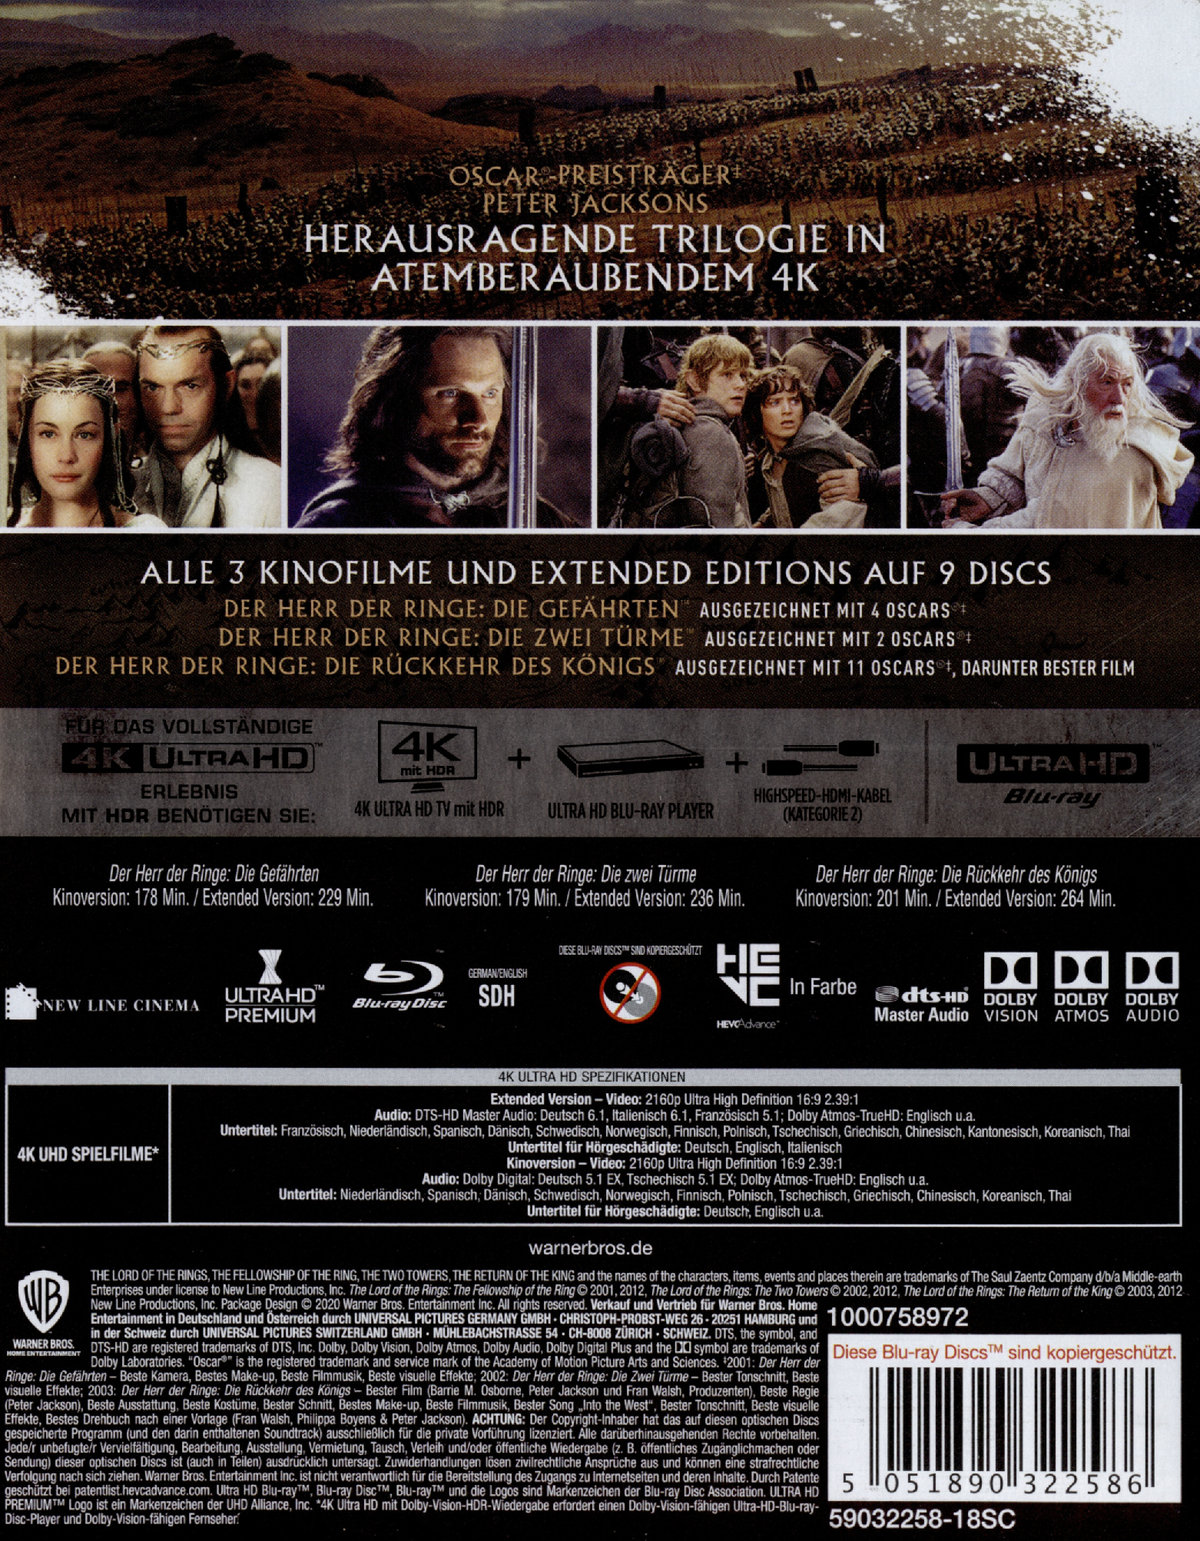 Herr der Ringe, Der - Extended Edition Trilogie (4K Ultra HD)